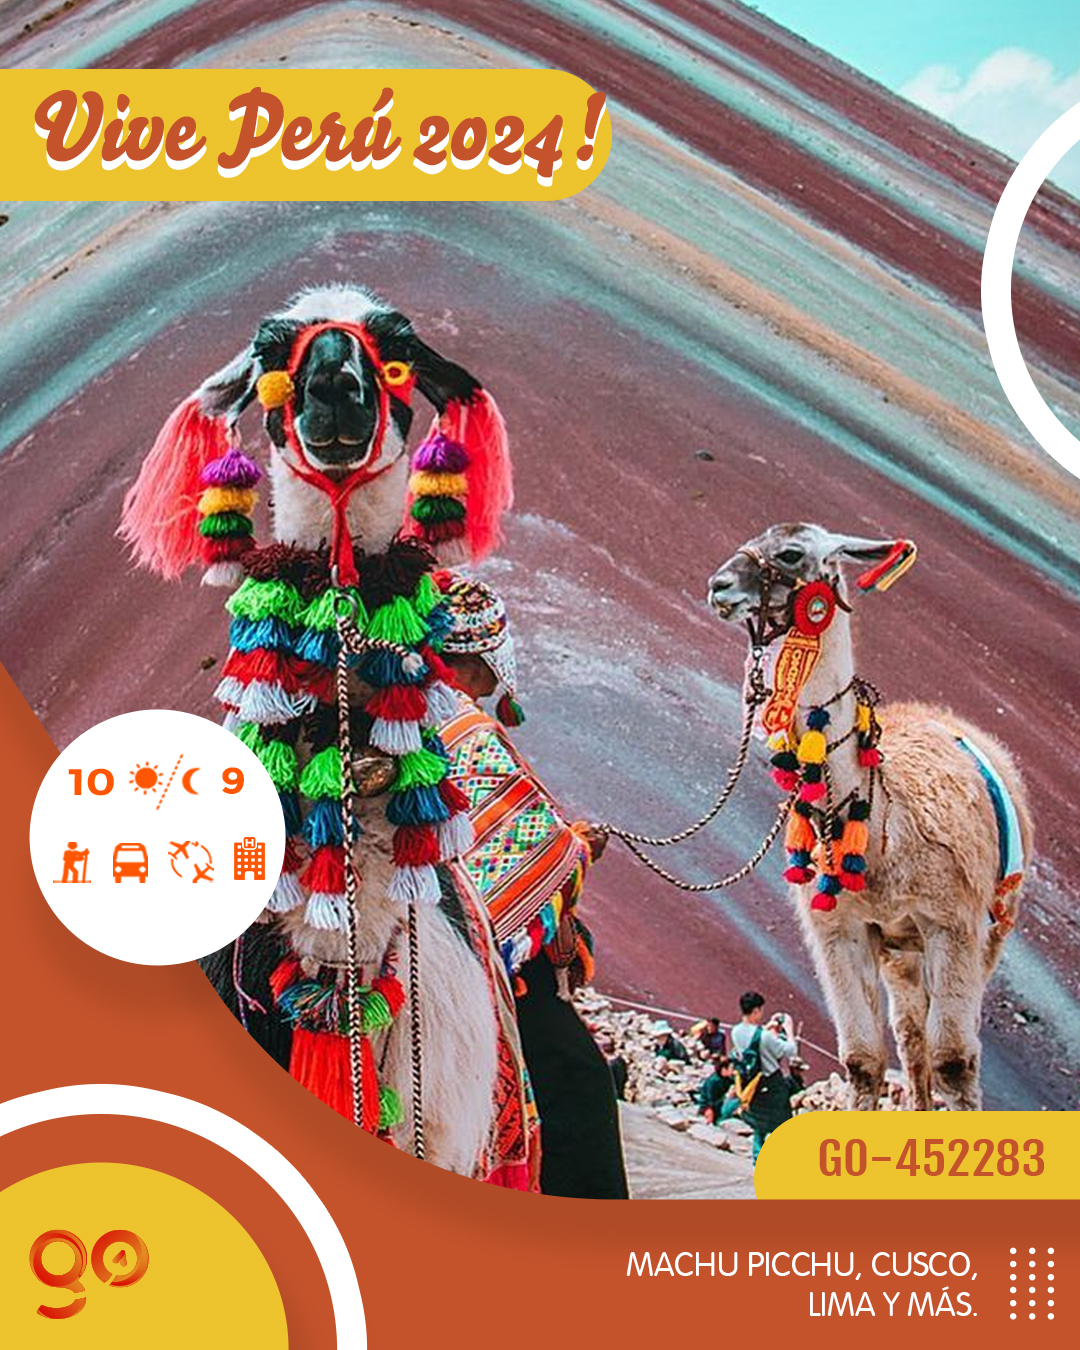 ¡Viaje a Perú 2024! Go Travel México